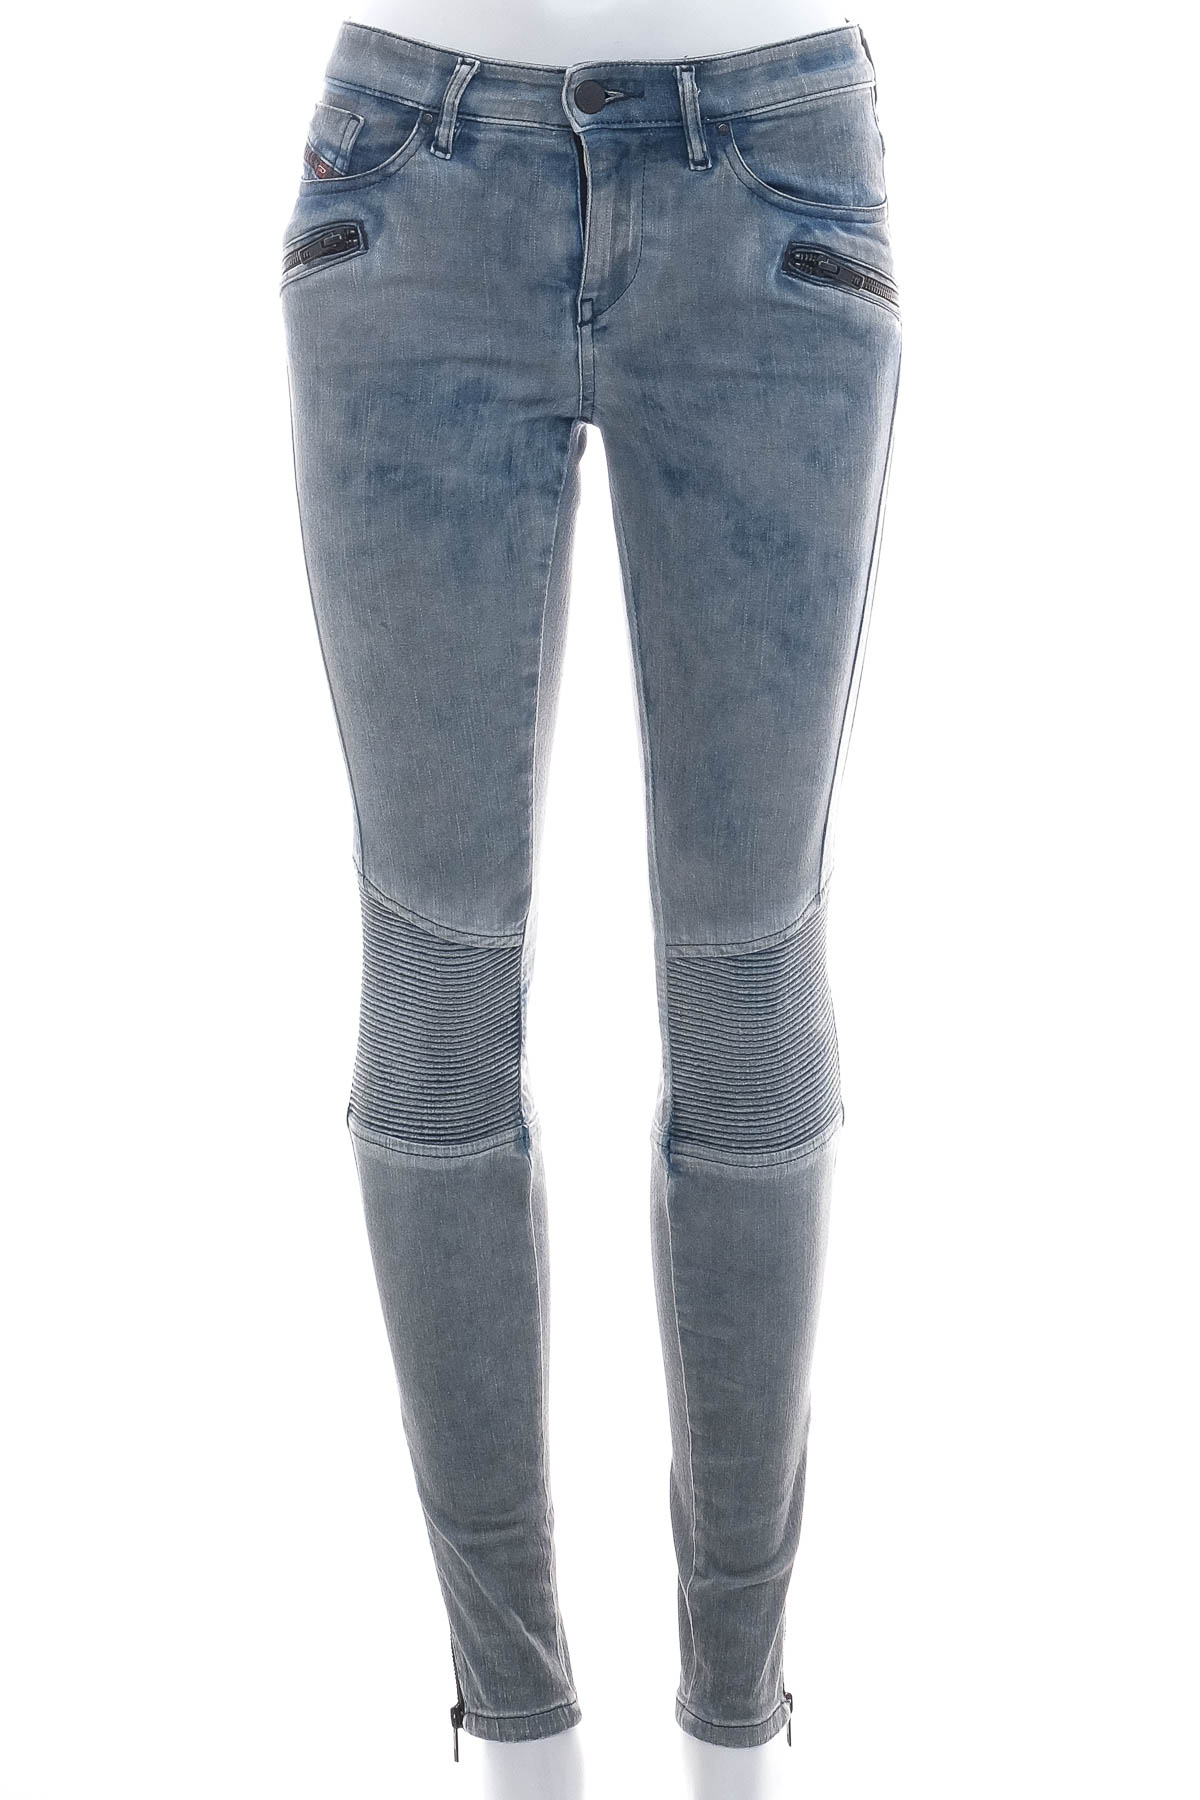 Women's jeans - DIESEL - 0